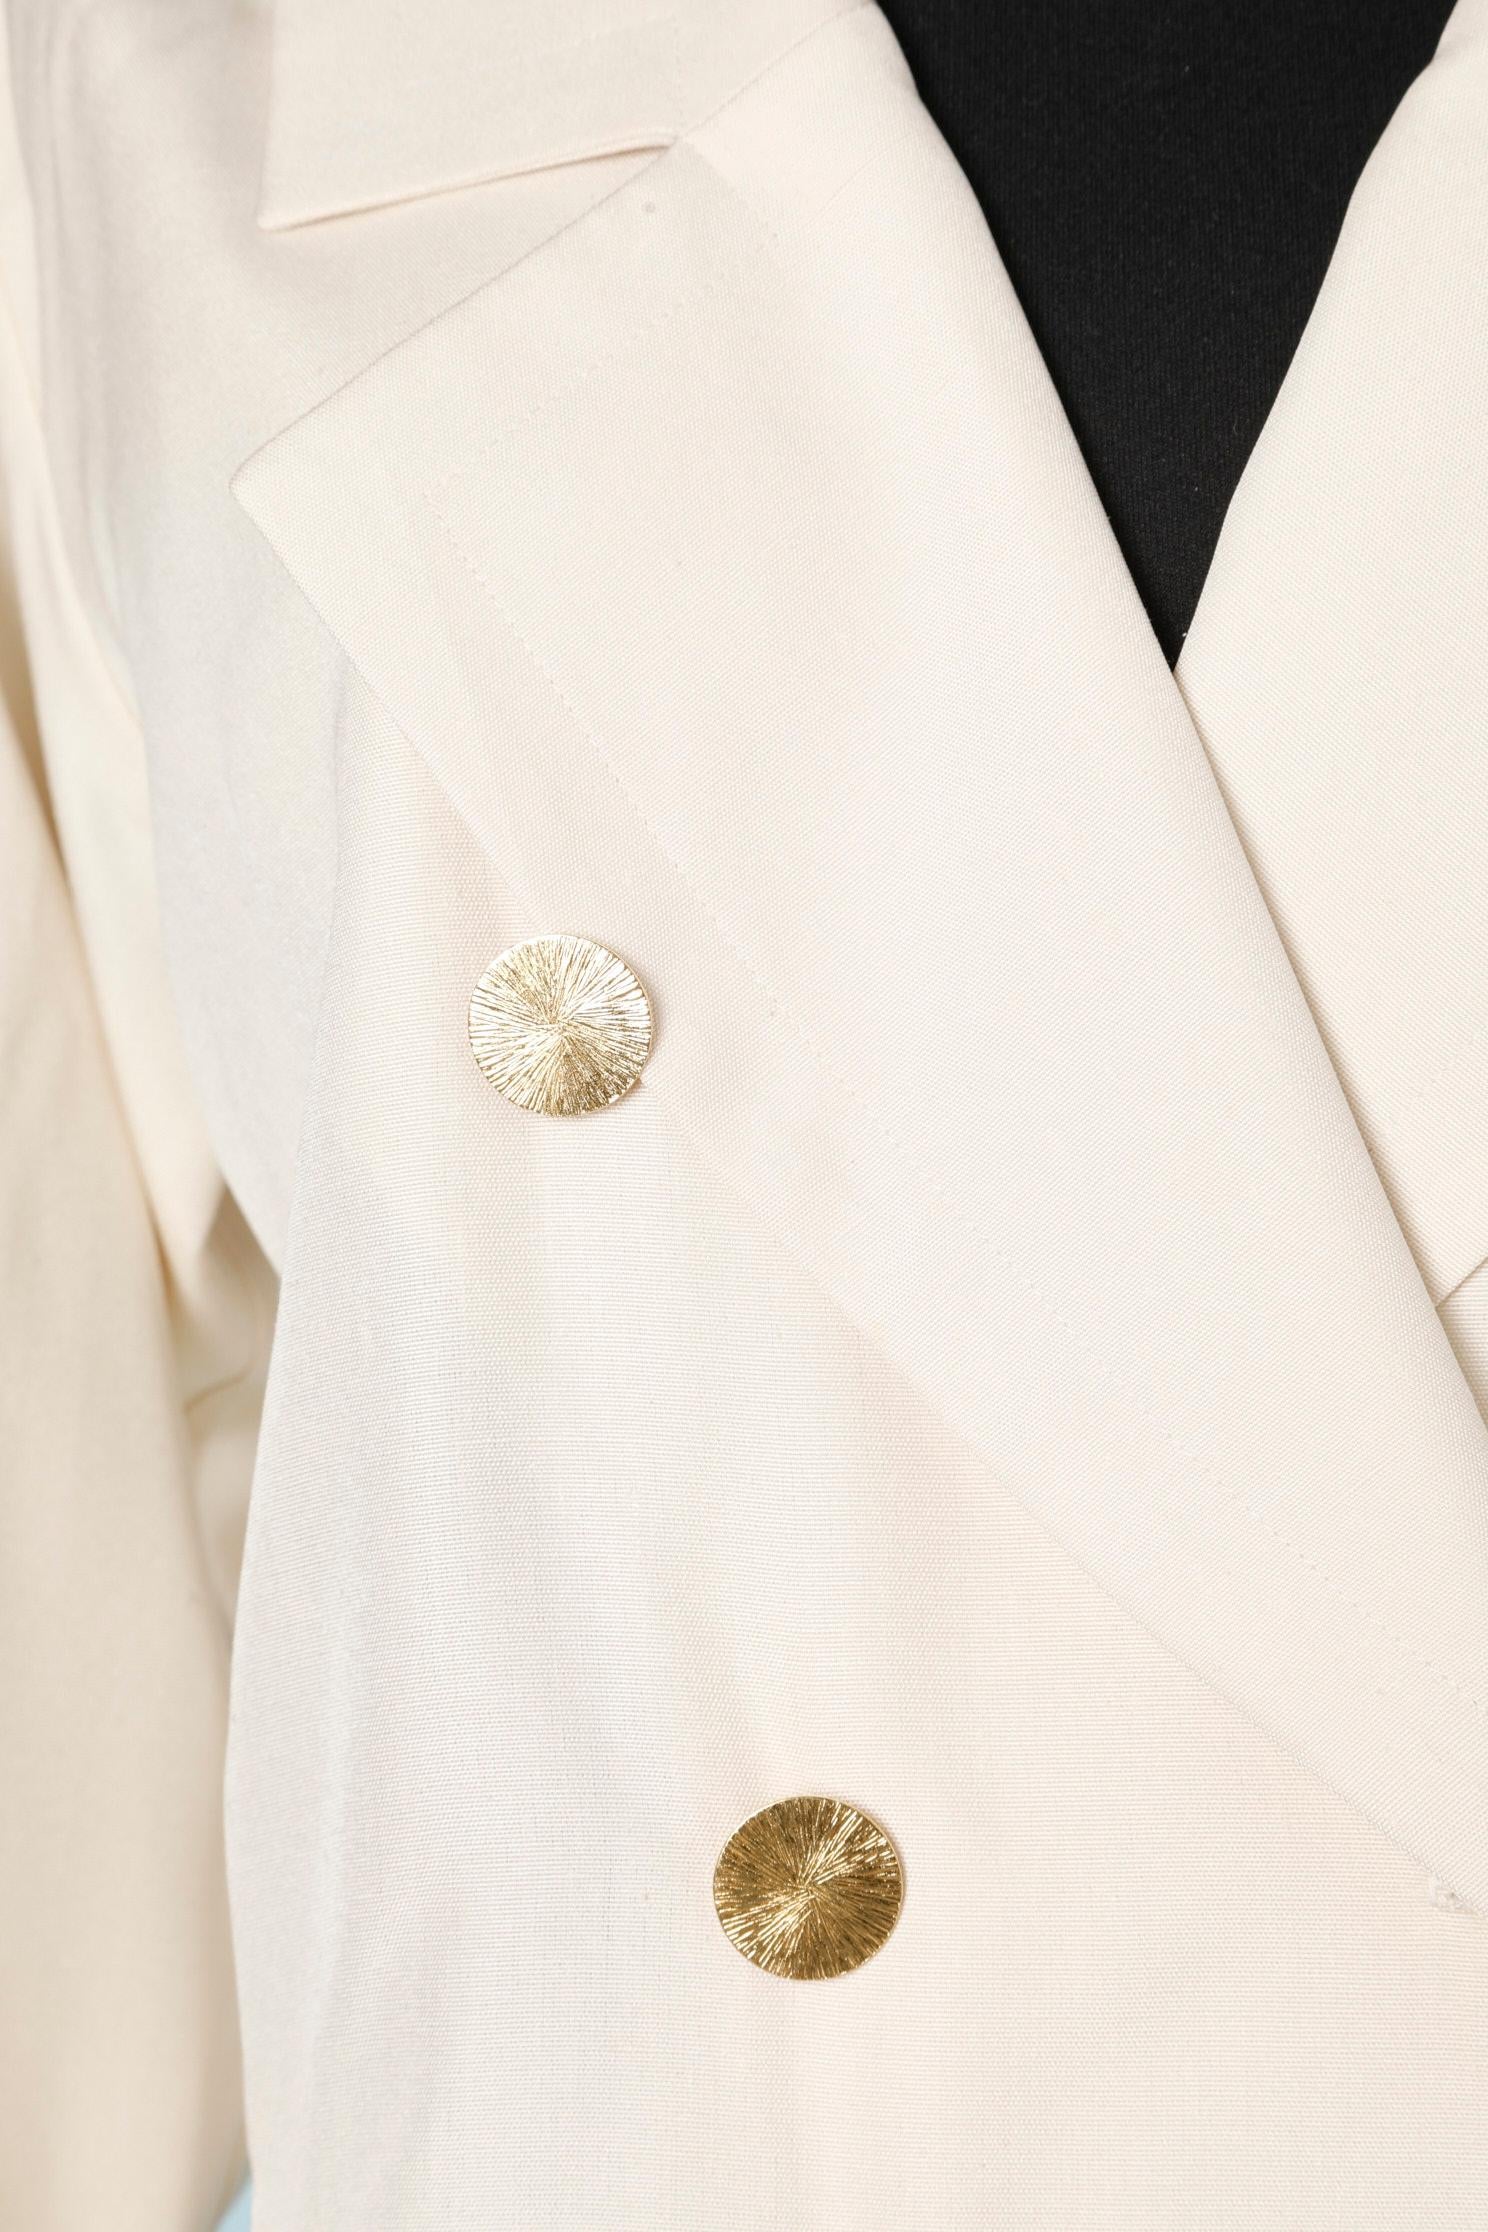 Or Combinaison-jupe en soie brute écrue  Yves Saint Laurent Rive Gauche avec boutons dorés  en vente